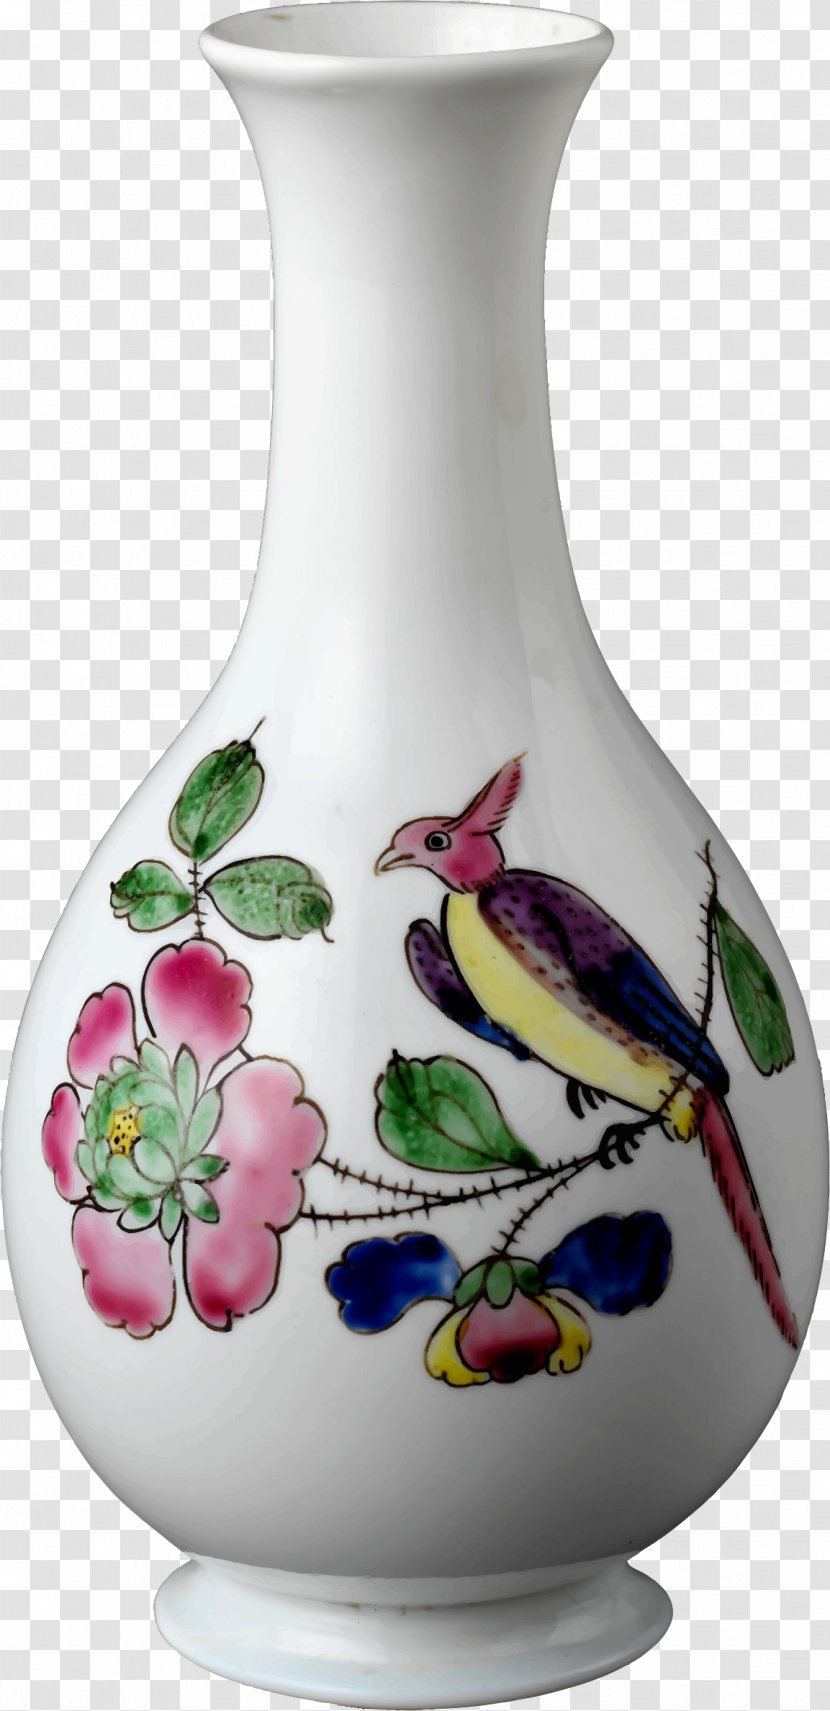 Vase Drawing Clip Art - Porcelain Transparent PNG